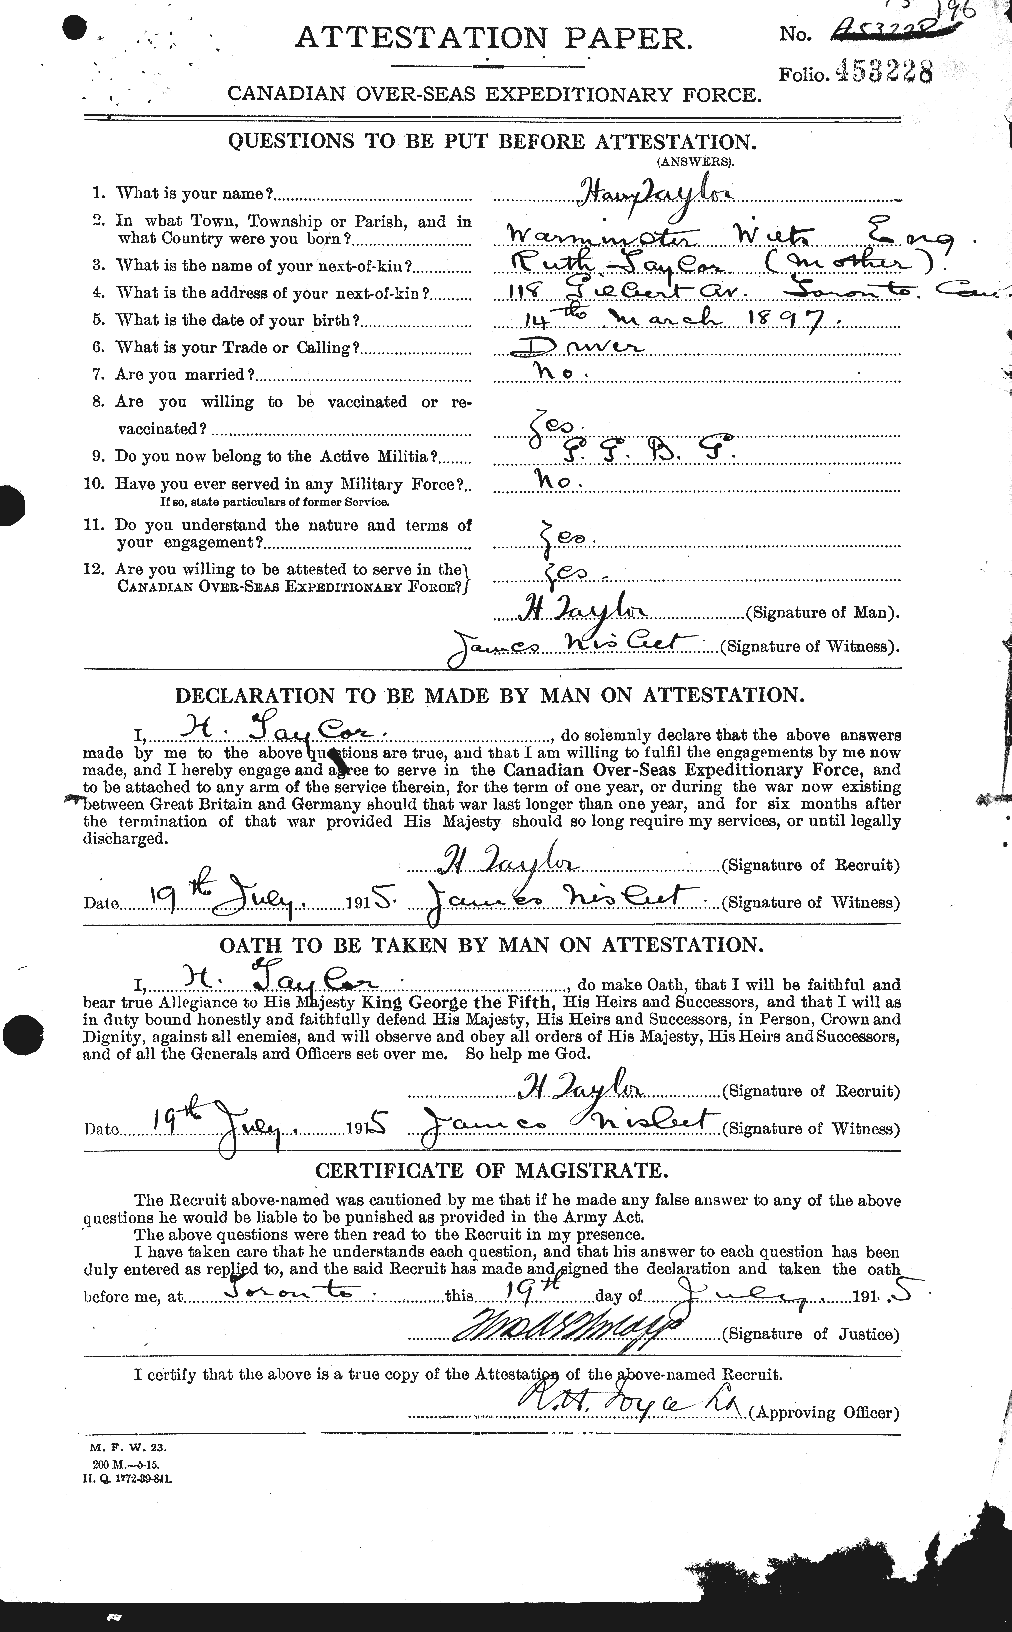 Dossiers du Personnel de la Première Guerre mondiale - CEC 626468a